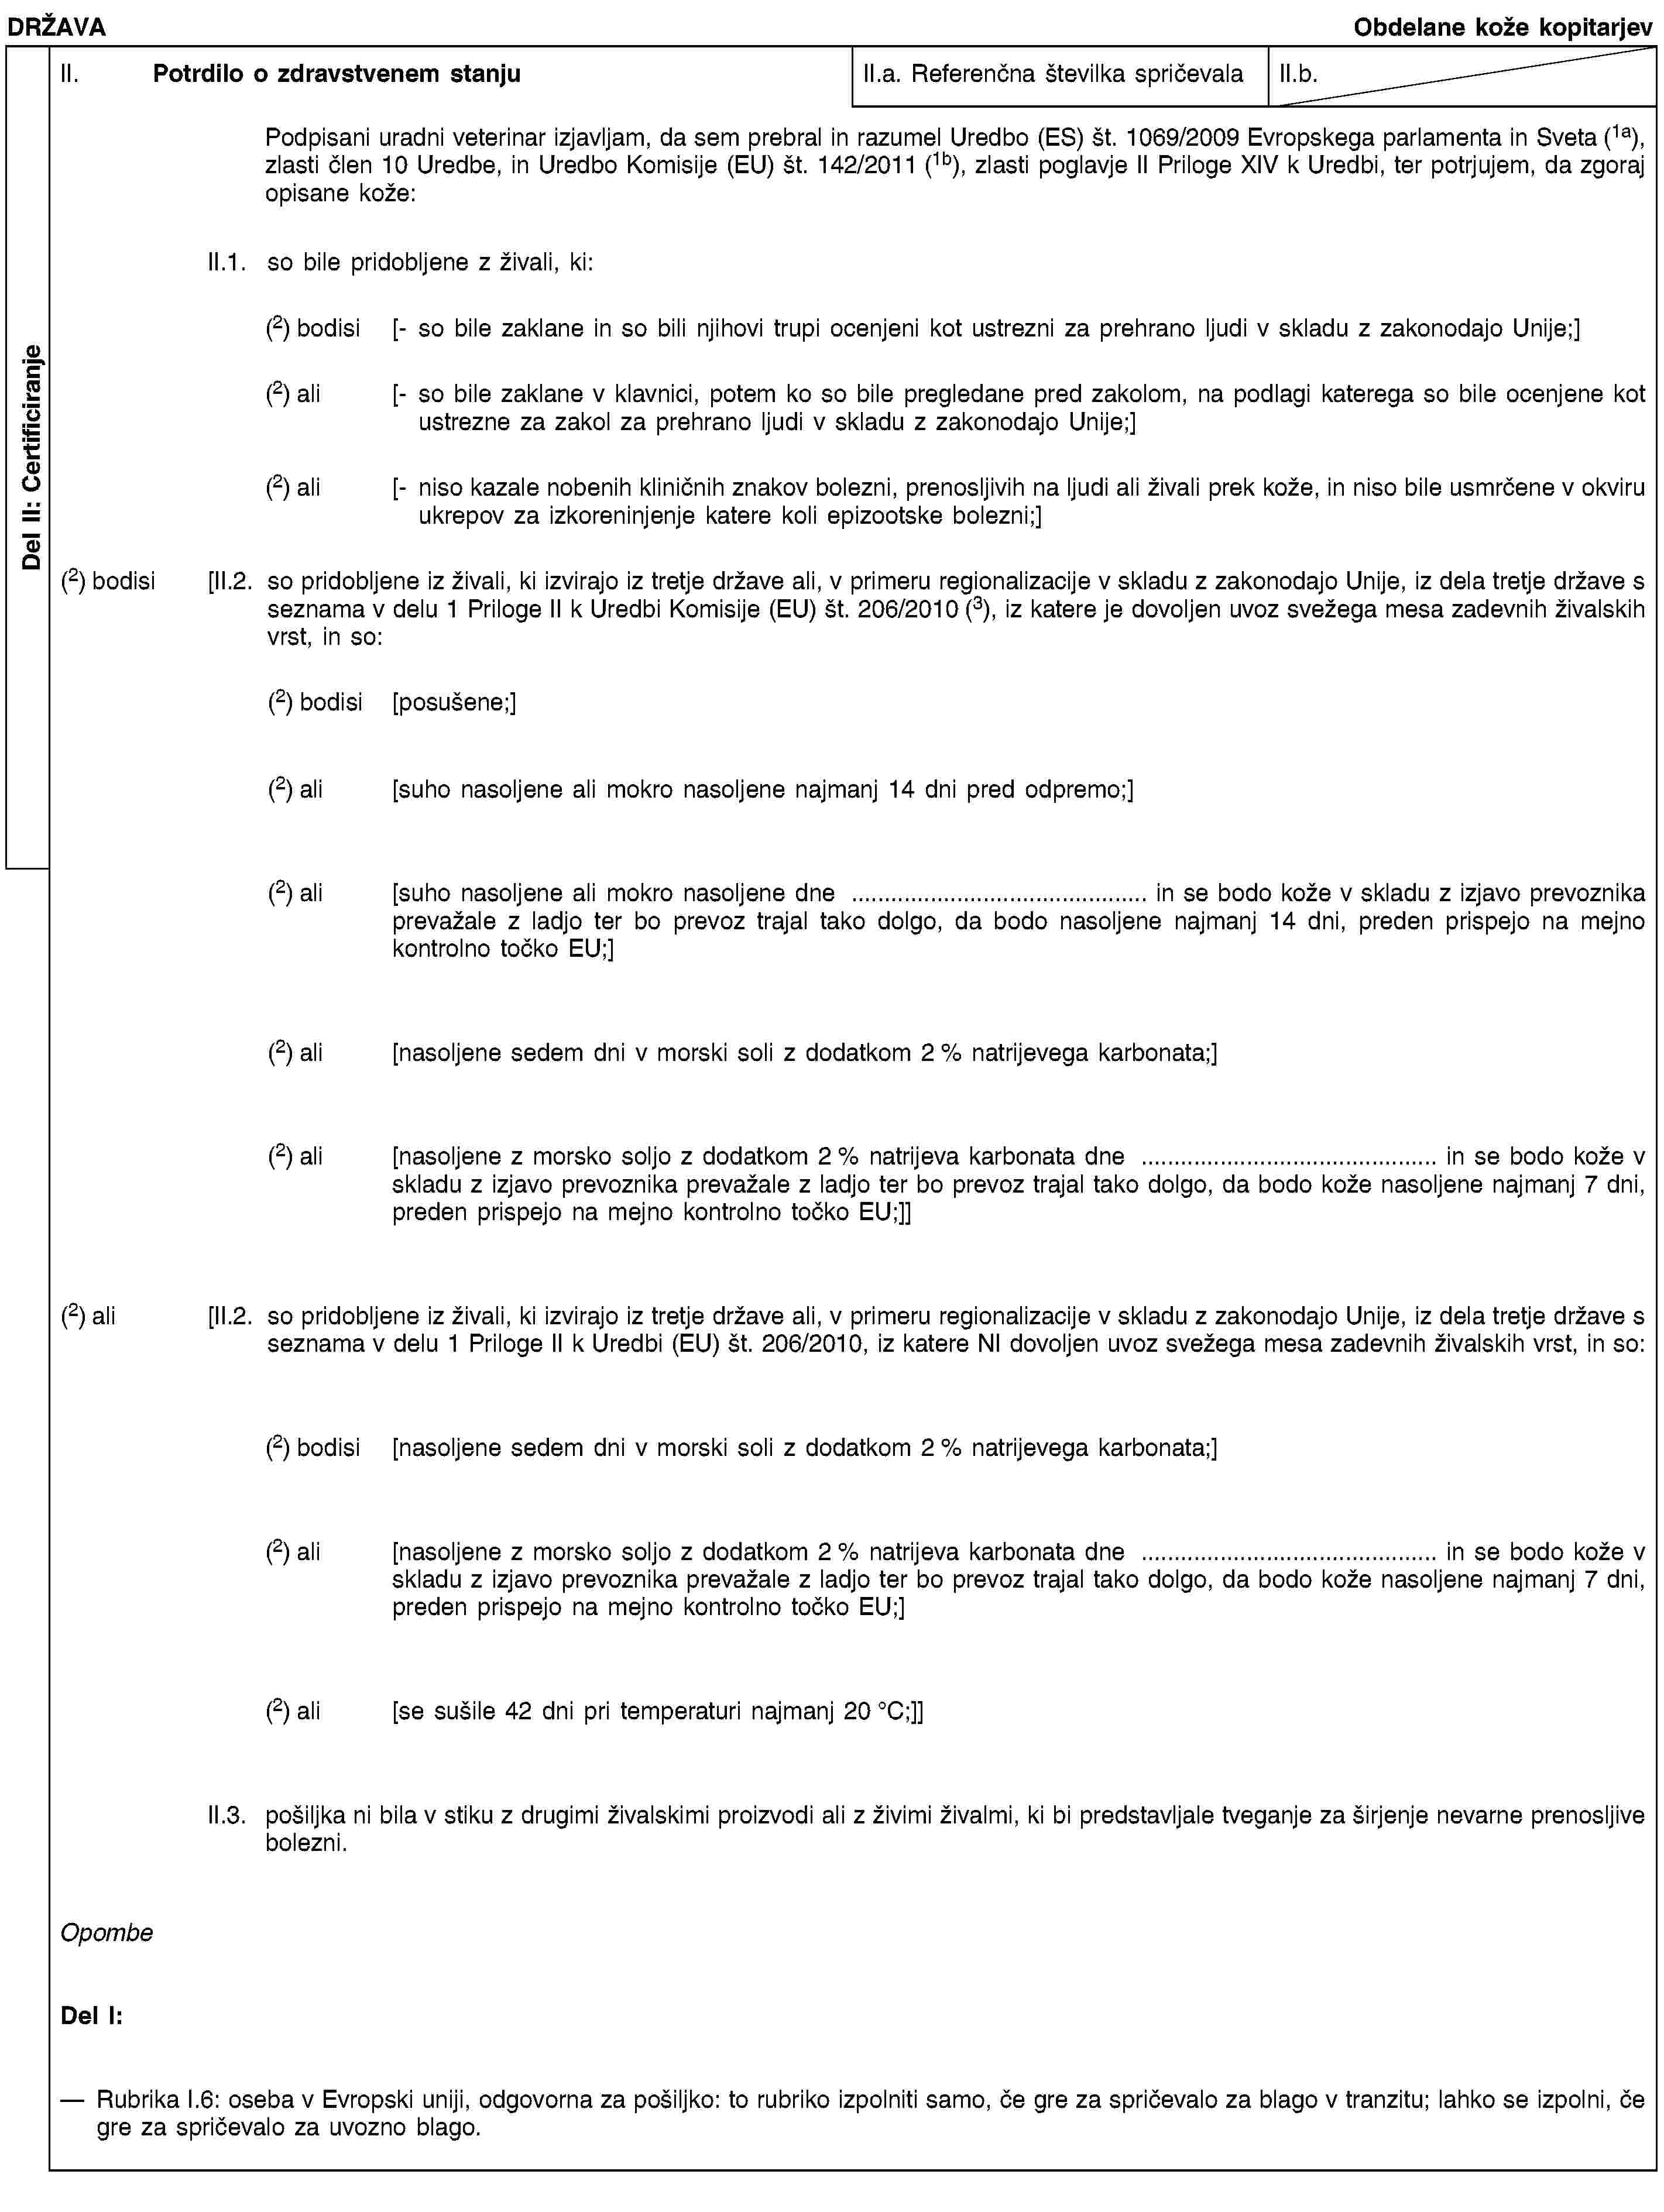 Del II: CertificiranjeDRŽAVAObdelane kože kopitarjevII. Potrdilo o zdravstvenem stanjuII.a. Referenčna številka spričevalaII.b.Podpisani uradni veterinar izjavljam, da sem prebral in razumel Uredbo (ES) št. 1069/2009 Evropskega parlamenta in Sveta (1a), zlasti člen 10 Uredbe, in Uredbo Komisije (EU) št. 142/2011 (1b), zlasti poglavje II Priloge XIV k Uredbi, ter potrjujem, da zgoraj opisane kože:II.1. so bile pridobljene z živali, ki:(2) bodisi [- so bile zaklane in so bili njihovi trupi ocenjeni kot ustrezni za prehrano ljudi v skladu z zakonodajo Unije;](2) ali [- so bile zaklane v klavnici, potem ko so bile pregledane pred zakolom, na podlagi katerega so bile ocenjene kot ustrezne za zakol za prehrano ljudi v skladu z zakonodajo Unije;](2) ali [- niso kazale nobenih kliničnih znakov bolezni, prenosljivih na ljudi ali živali prek kože, in niso bile usmrčene v okviru ukrepov za izkoreninjenje katere koli epizootske bolezni;](2) bodisi [II.2. so pridobljene iz živali, ki izvirajo iz tretje države ali, v primeru regionalizacije v skladu z zakonodajo Unije, iz dela tretje države s seznama v delu 1 Priloge II k Uredbi Komisije (EU) št. 206/2010 (3), iz katere je dovoljen uvoz svežega mesa zadevnih živalskih vrst, in so:(2) bodisi [posušene;](2) ali [suho nasoljene ali mokro nasoljene najmanj 14 dni pred odpremo;](2) ali [suho nasoljene ali mokro nasoljene dne … in se bodo kože v skladu z izjavo prevoznika prevažale z ladjo ter bo prevoz trajal tako dolgo, da bodo nasoljene najmanj 14 dni, preden prispejo na mejno kontrolno točko EU;](2) ali [nasoljene sedem dni v morski soli z dodatkom 2 % natrijevega karbonata;](2) ali [nasoljene z morsko soljo z dodatkom 2 % natrijeva karbonata dne … in se bodo kože v skladu z izjavo prevoznika prevažale z ladjo ter bo prevoz trajal tako dolgo, da bodo kože nasoljene najmanj 7 dni, preden prispejo na mejno kontrolno točko EU;]](2) ali [II.2. so pridobljene iz živali, ki izvirajo iz tretje države ali, v primeru regionalizacije v skladu z zakonodajo Unije, iz dela tretje države s seznama v delu 1 Priloge II k Uredbi (EU) št. 206/2010, iz katere NI dovoljen uvoz svežega mesa zadevnih živalskih vrst, in so:(2) bodisi [nasoljene sedem dni v morski soli z dodatkom 2 % natrijevega karbonata;](2) ali [nasoljene z morsko soljo z dodatkom 2 % natrijeva karbonata dne … in se bodo kože v skladu z izjavo prevoznika prevažale z ladjo ter bo prevoz trajal tako dolgo, da bodo kože nasoljene najmanj 7 dni, preden prispejo na mejno kontrolno točko EU;](2) ali [se sušile 42 dni pri temperaturi najmanj 20 °C;]]II.3. pošiljka ni bila v stiku z drugimi živalskimi proizvodi ali z živimi živalmi, ki bi predstavljale tveganje za širjenje nevarne prenosljive bolezni.OpombeDel I:Rubrika I.6: oseba v Evropski uniji, odgovorna za pošiljko: to rubriko izpolniti samo, če gre za spričevalo za blago v tranzitu; lahko se izpolni, če gre za spričevalo za uvozno blago.